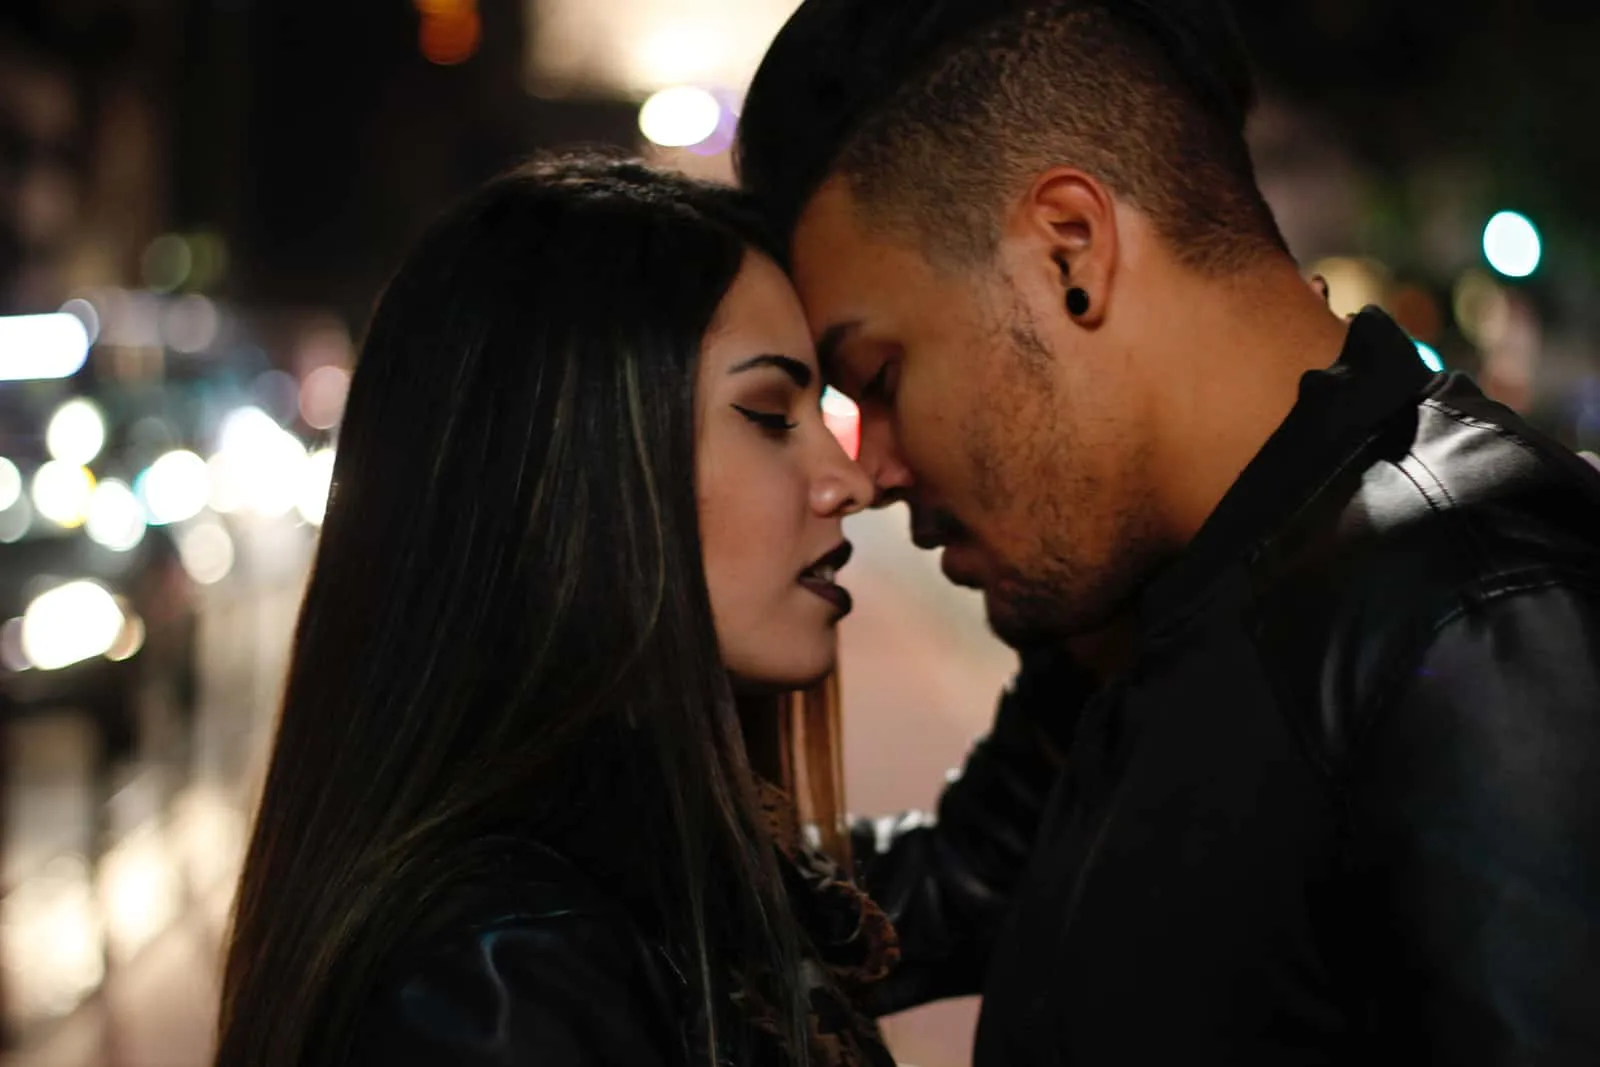 Ein Mann und eine Frau, die sich küssen wollen, stehen auf einer Straße